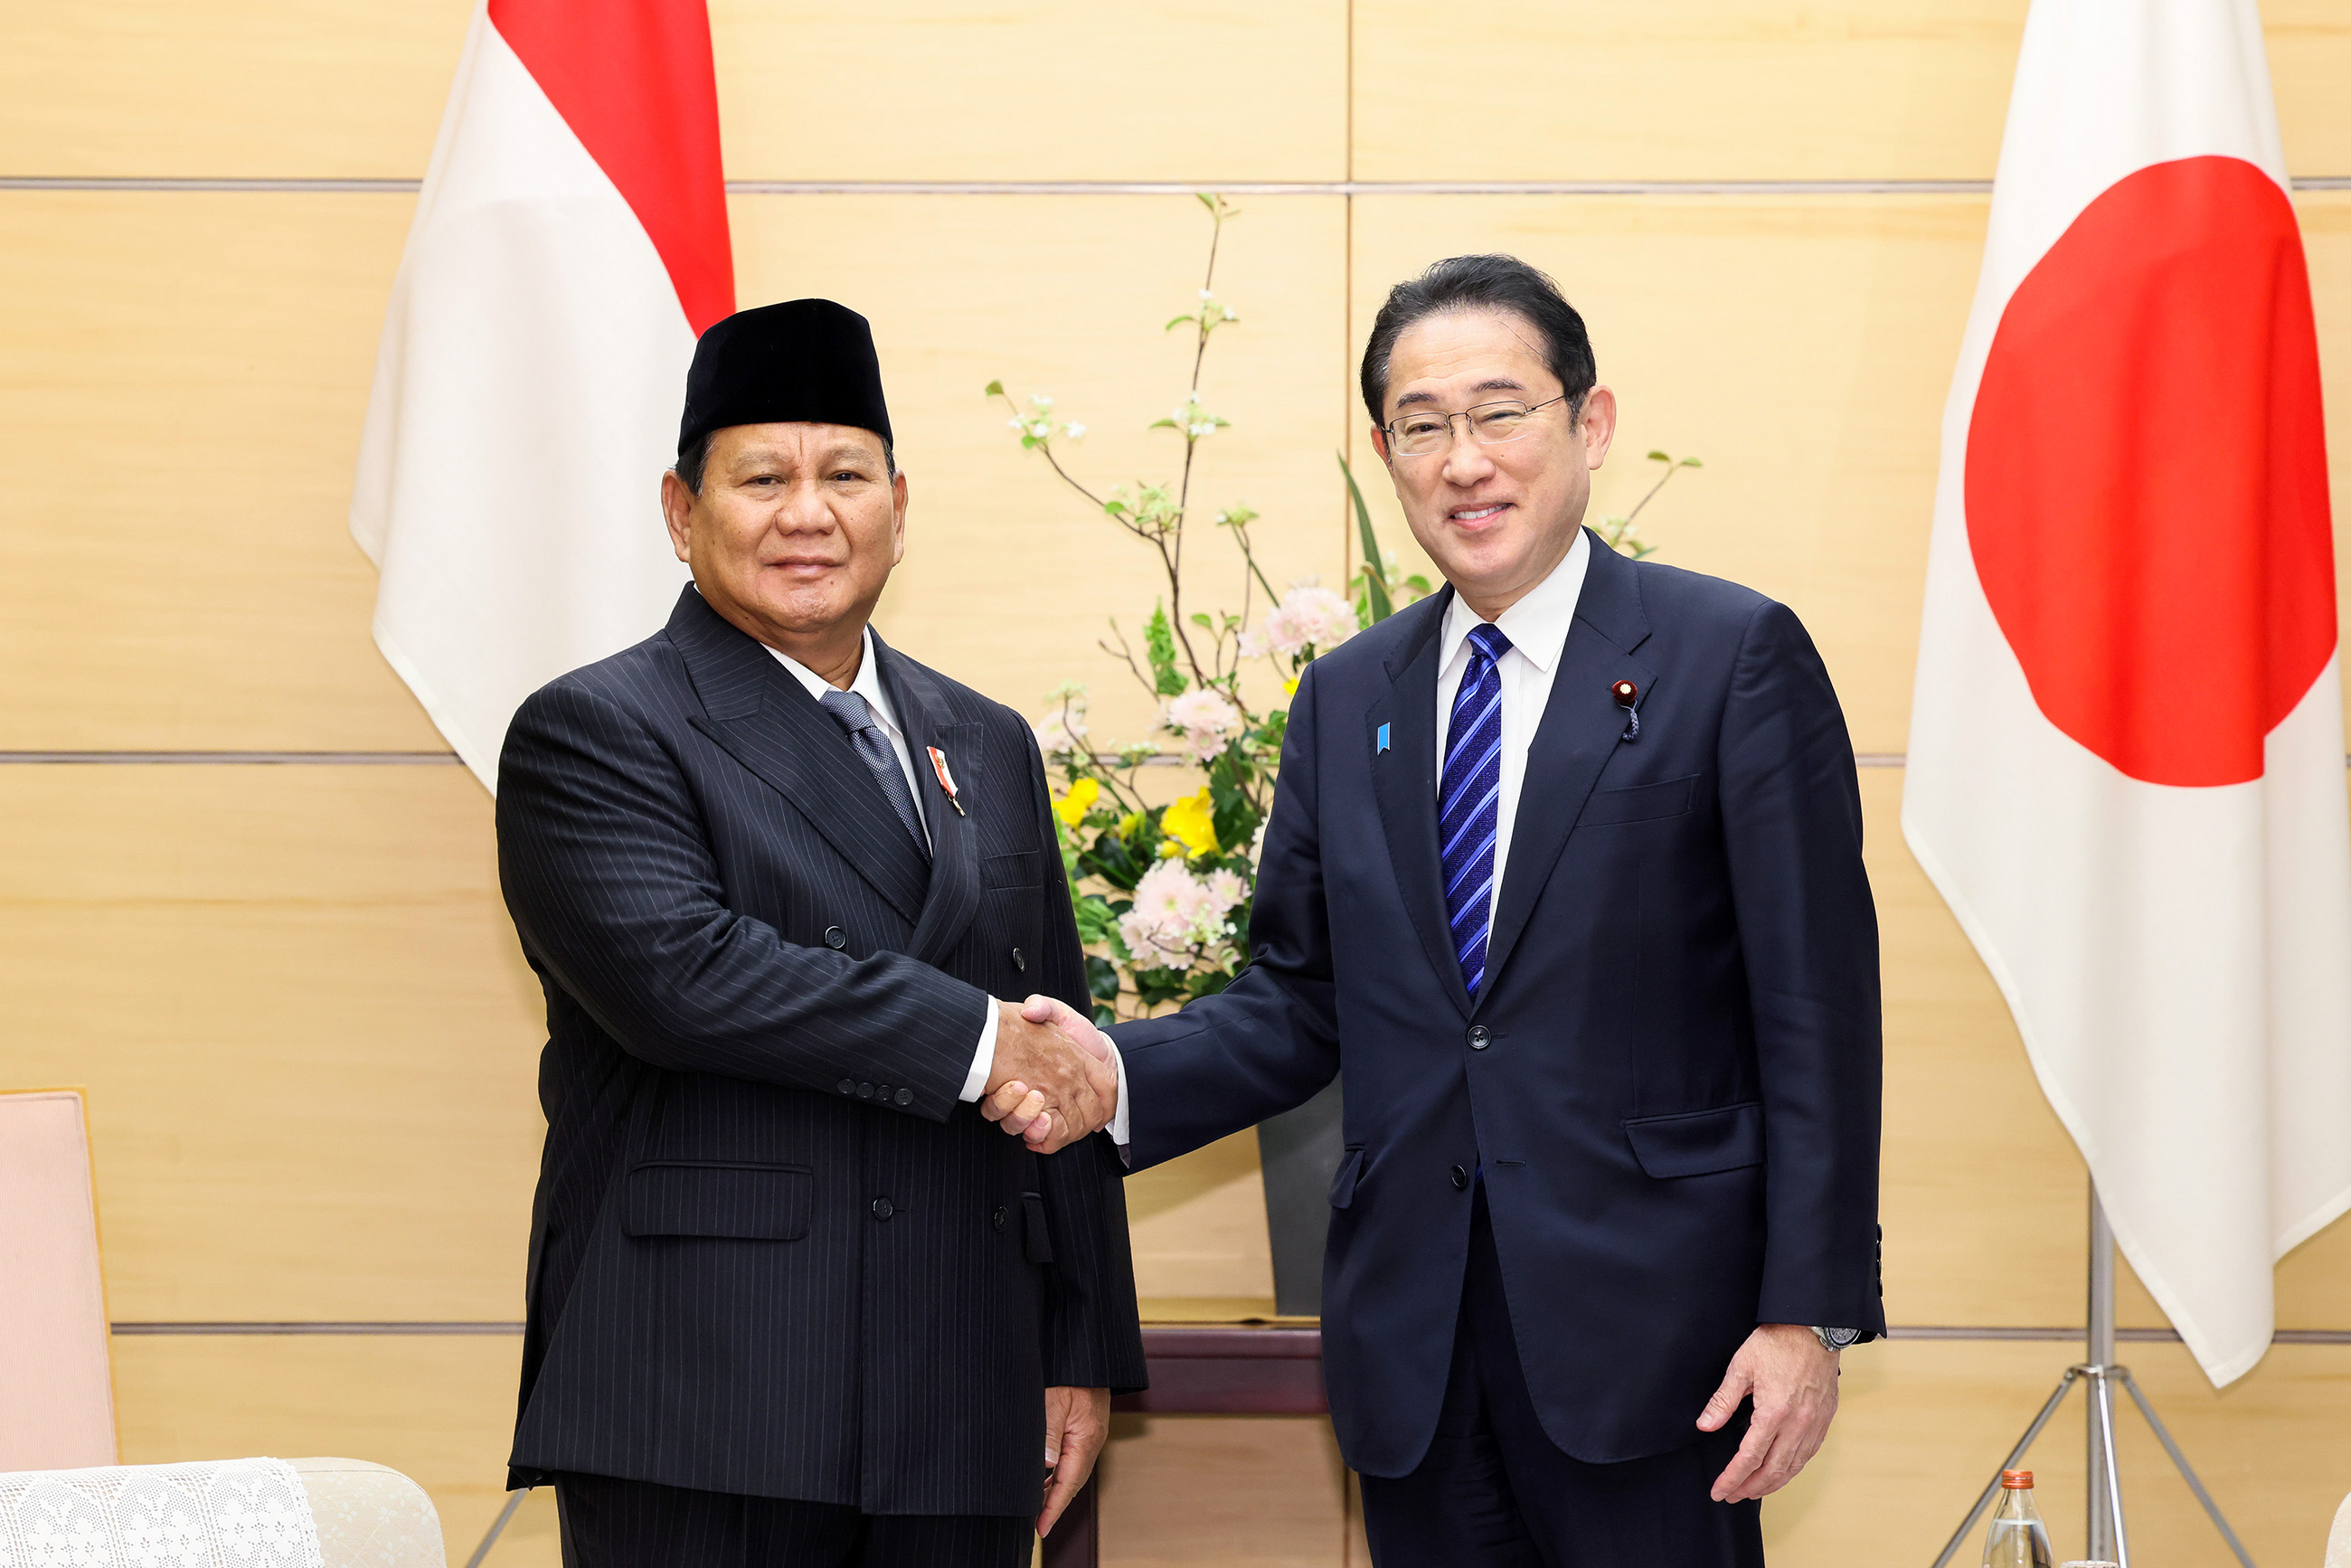 プラボウォ次期インドネシア大統領による表敬